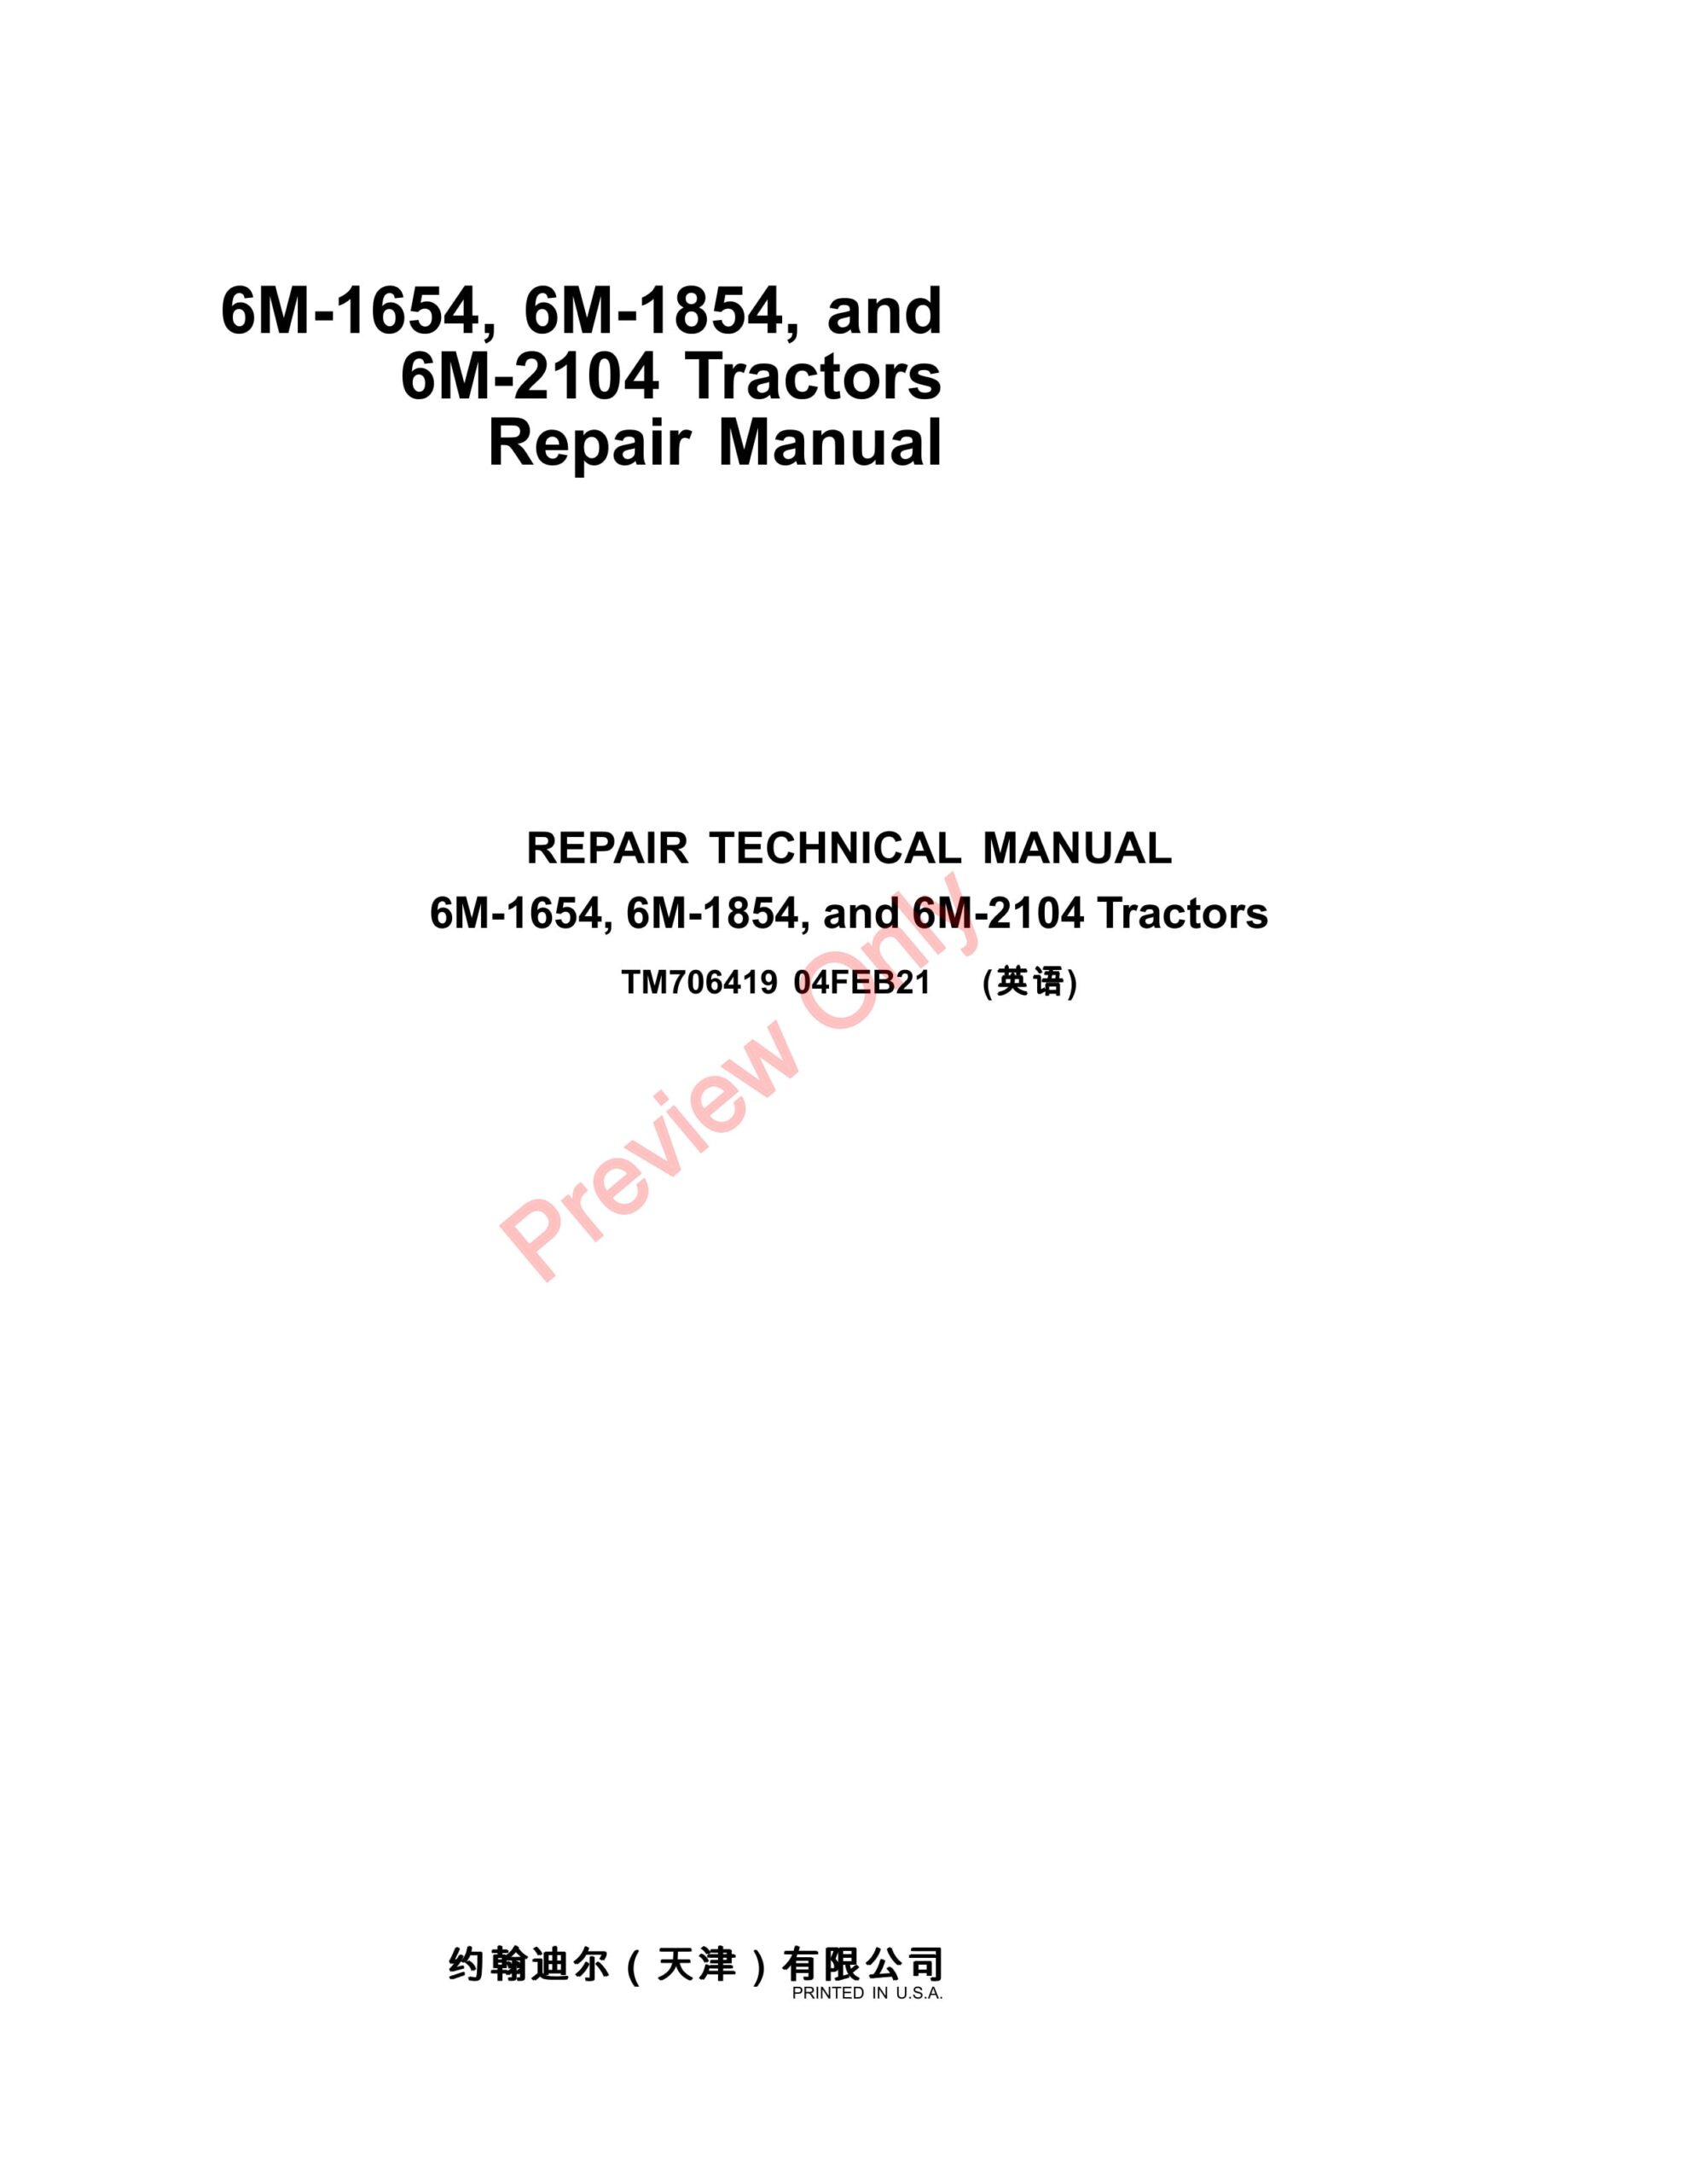 John Deere 6M-1654, 6M-1854, and 6M-2104 Tractors Repair Technical Manual TM706419 04FEB21-1